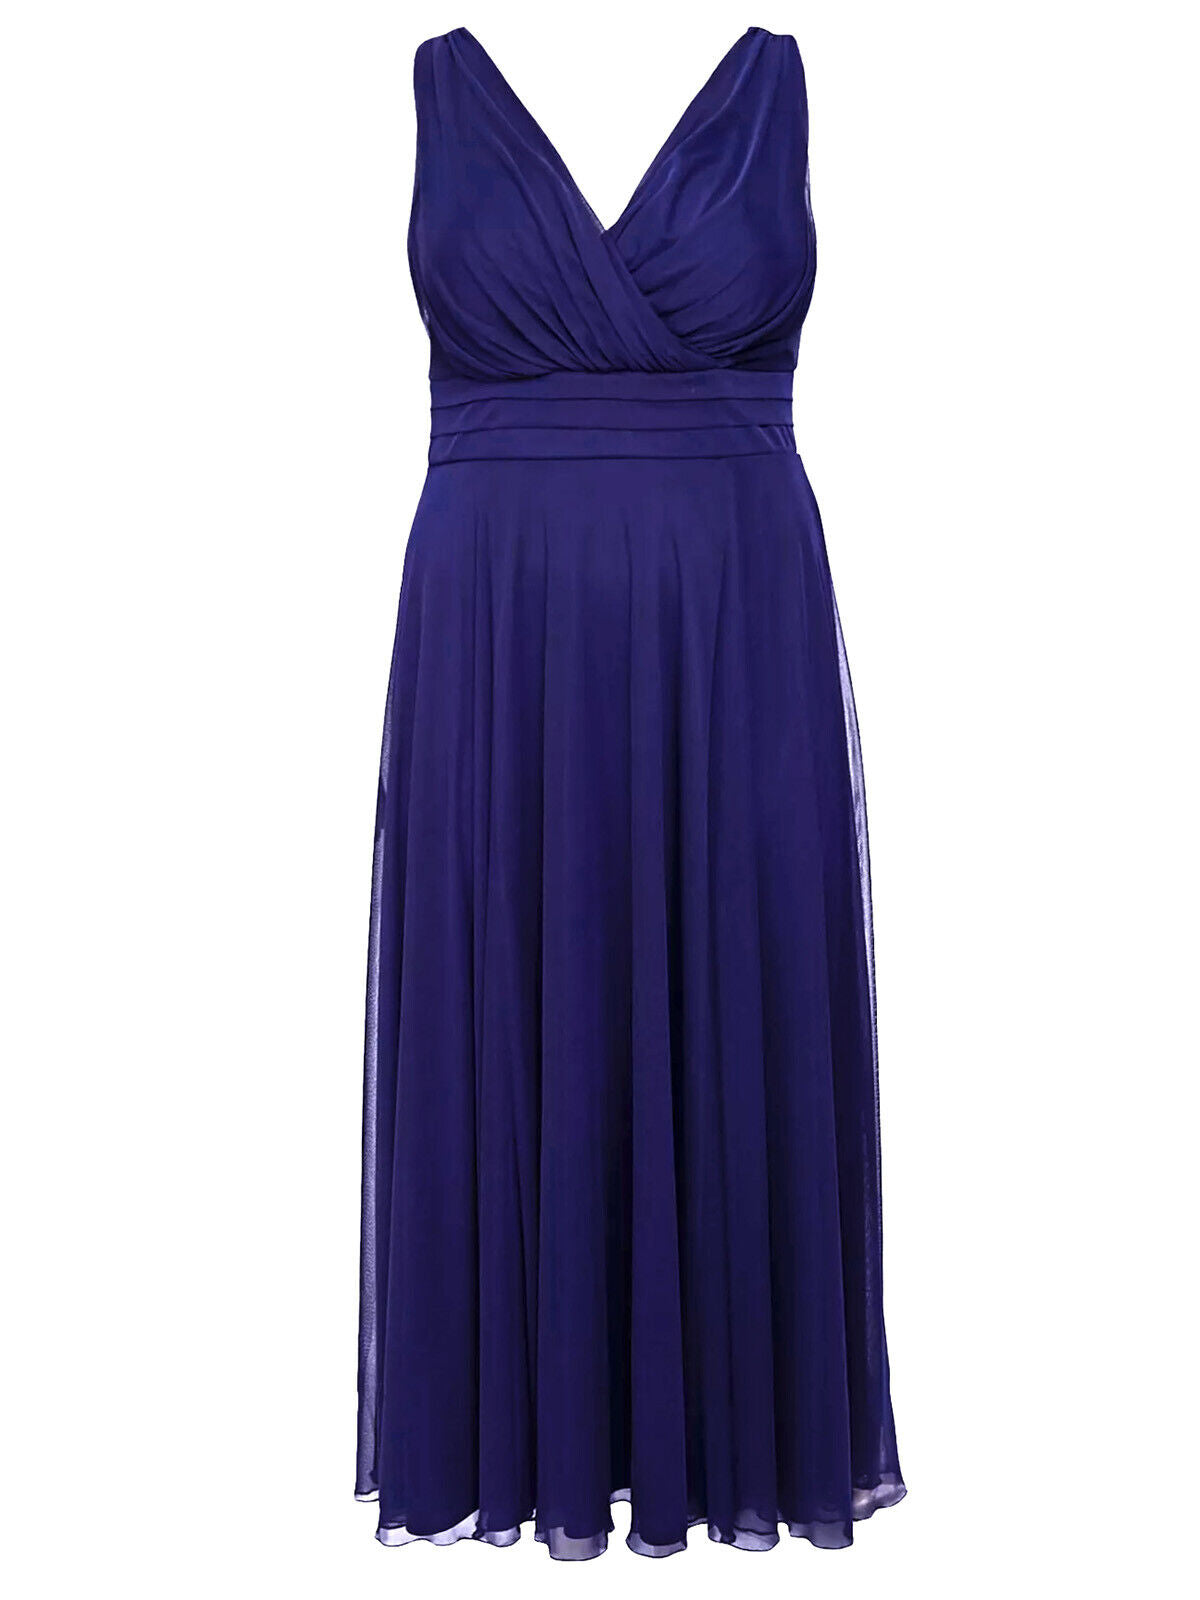 Scarlett &amp; Jo Electric Blue Nancy Marilyn Chiffon Maxi Dress in Size 10 RRP £75